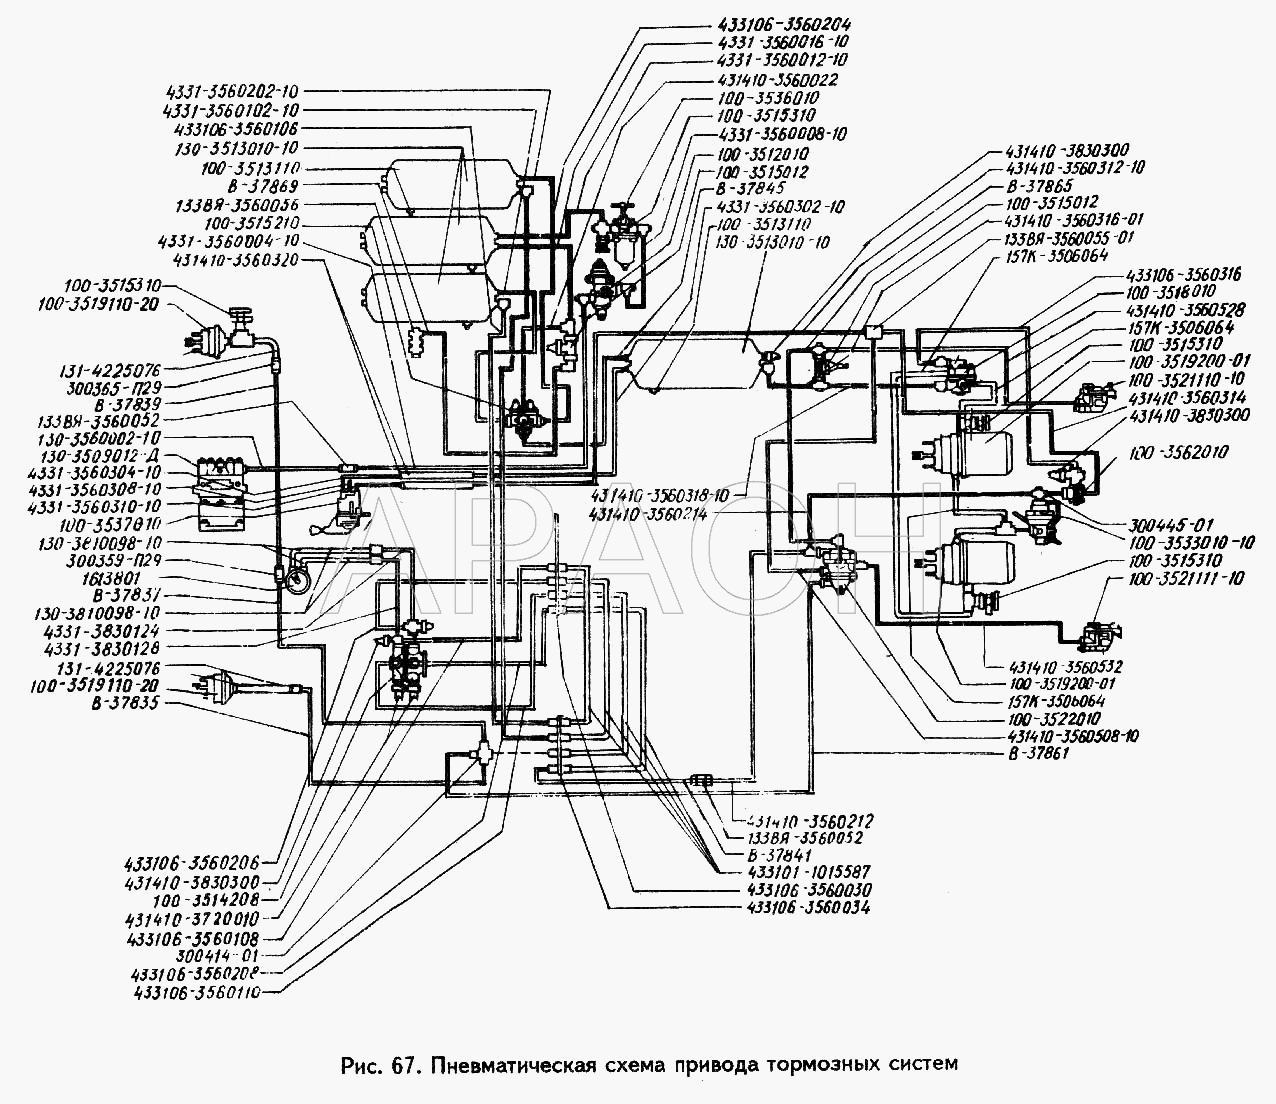 Пневматическая схема привода тормозных систем ЗИЛ 494560